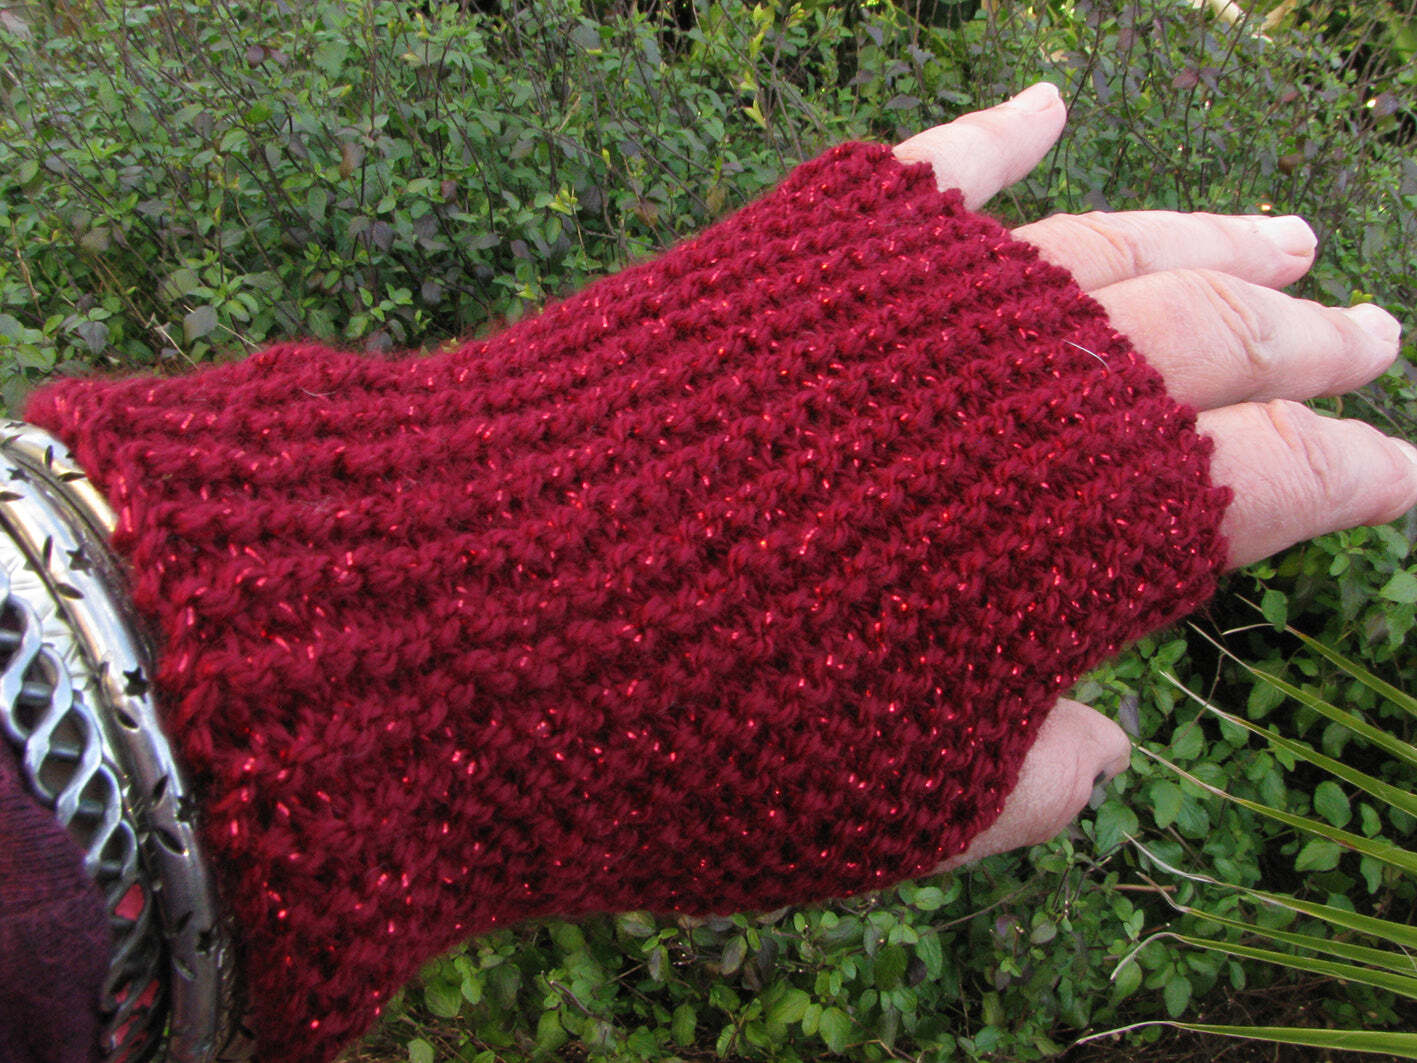 Red Speckled Gloves